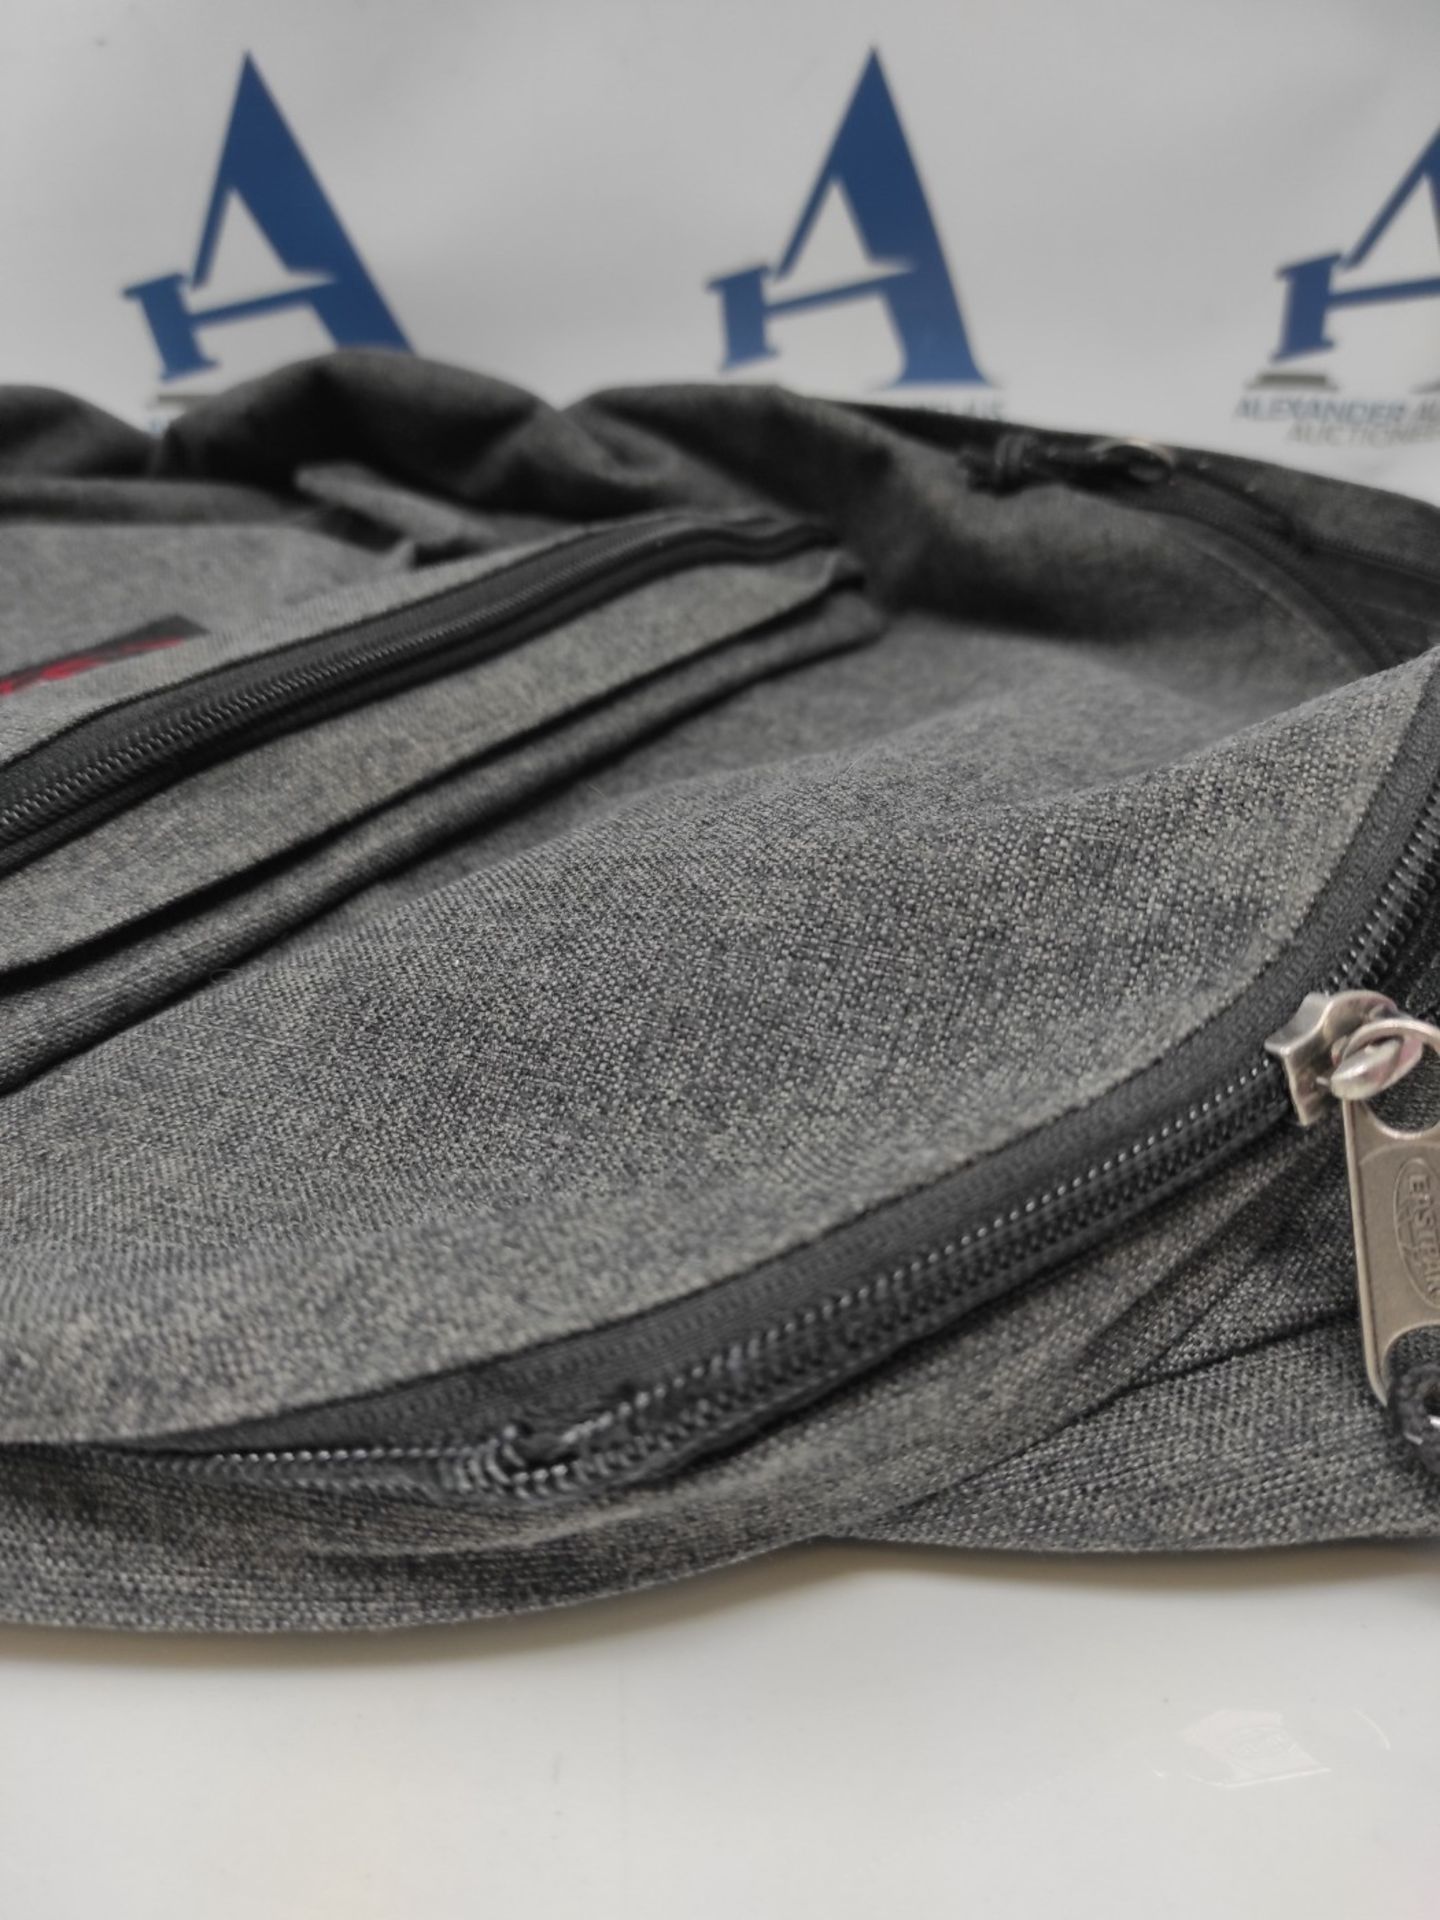 Eastpak Bags/Backpacks/Suitcases Padded Pak'R Black Denim (EK62077H) NS Grey - Image 3 of 3